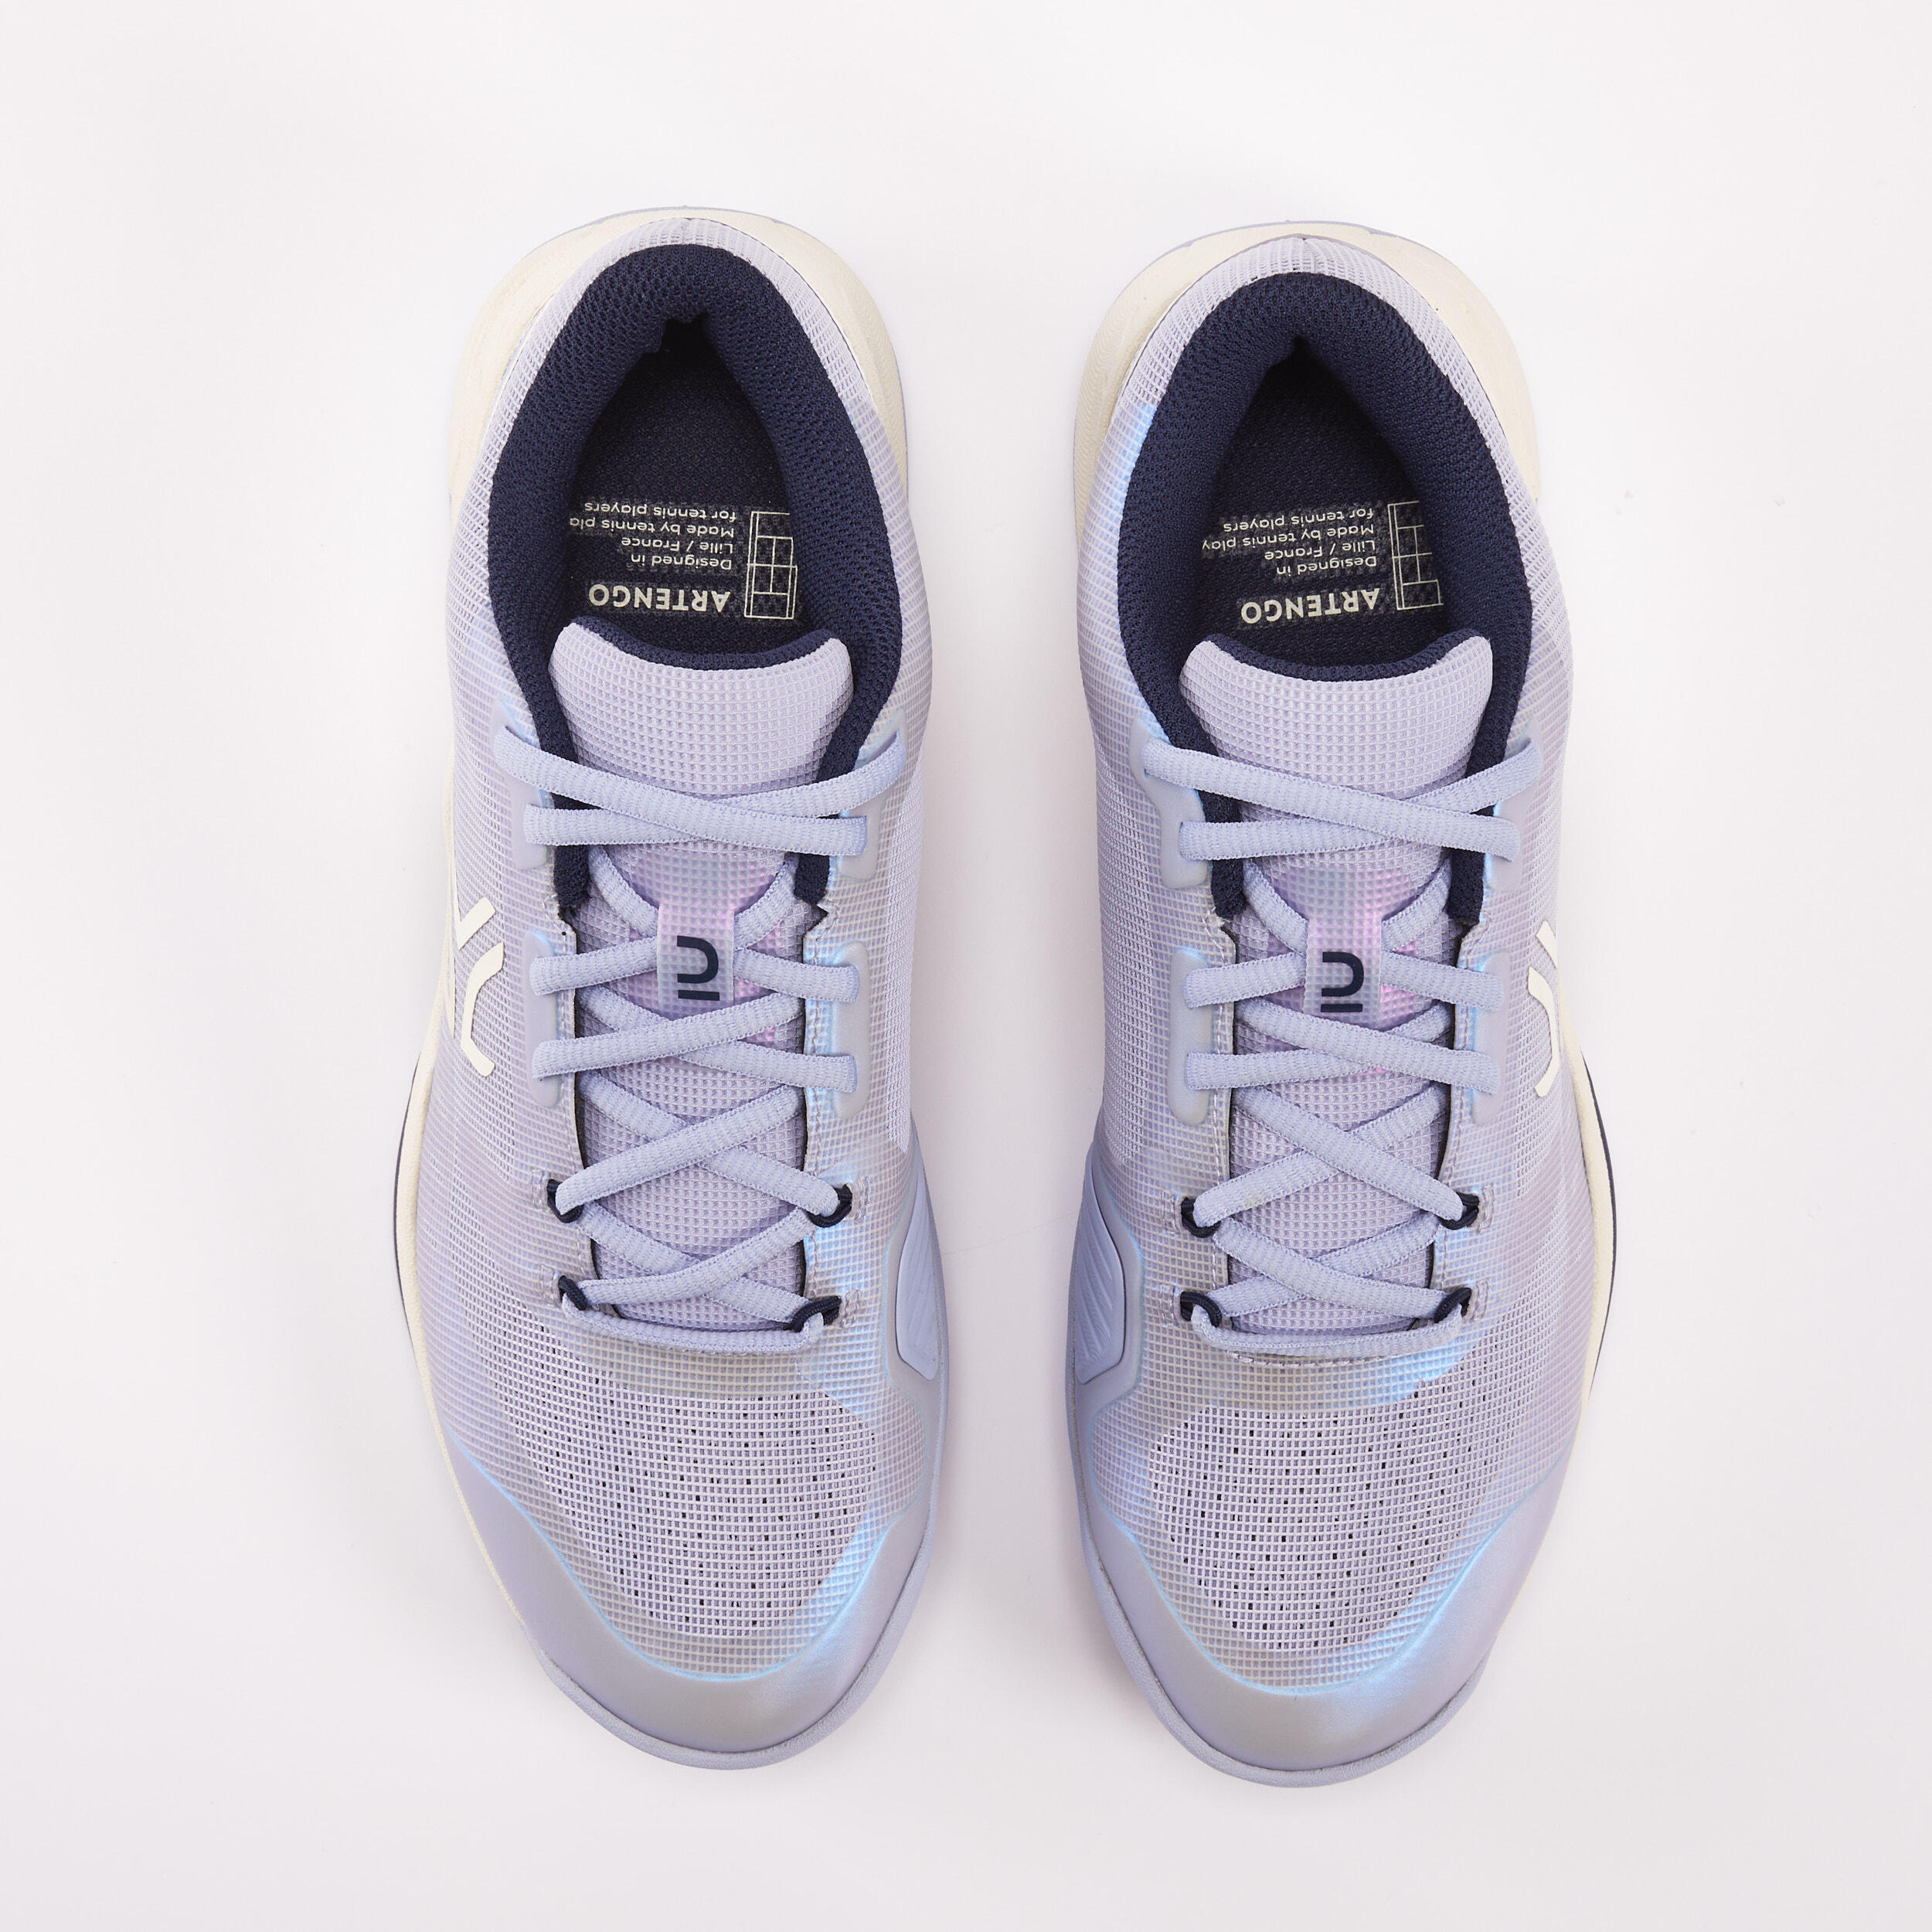 Women's Multicourt Tennis Shoes Fast - Lavender Blue 8/8